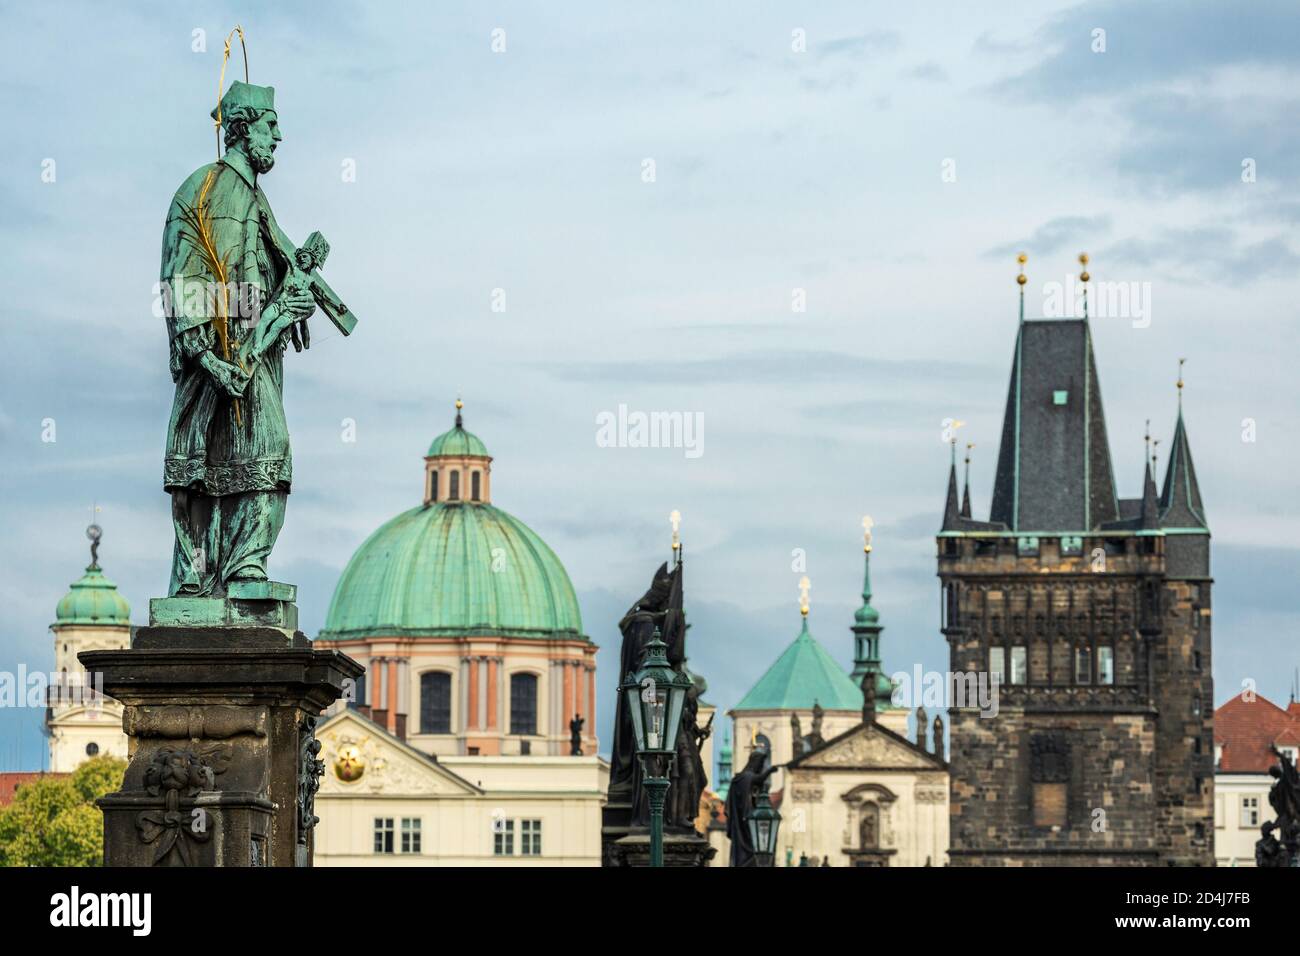 Statue des Johannes von Nepomuk, Kuppel der St. Francis of Assisi Kirche und Brückenturm, Karlsbrücke, Altstadt, Prag, Tschechische Republik Stockfoto